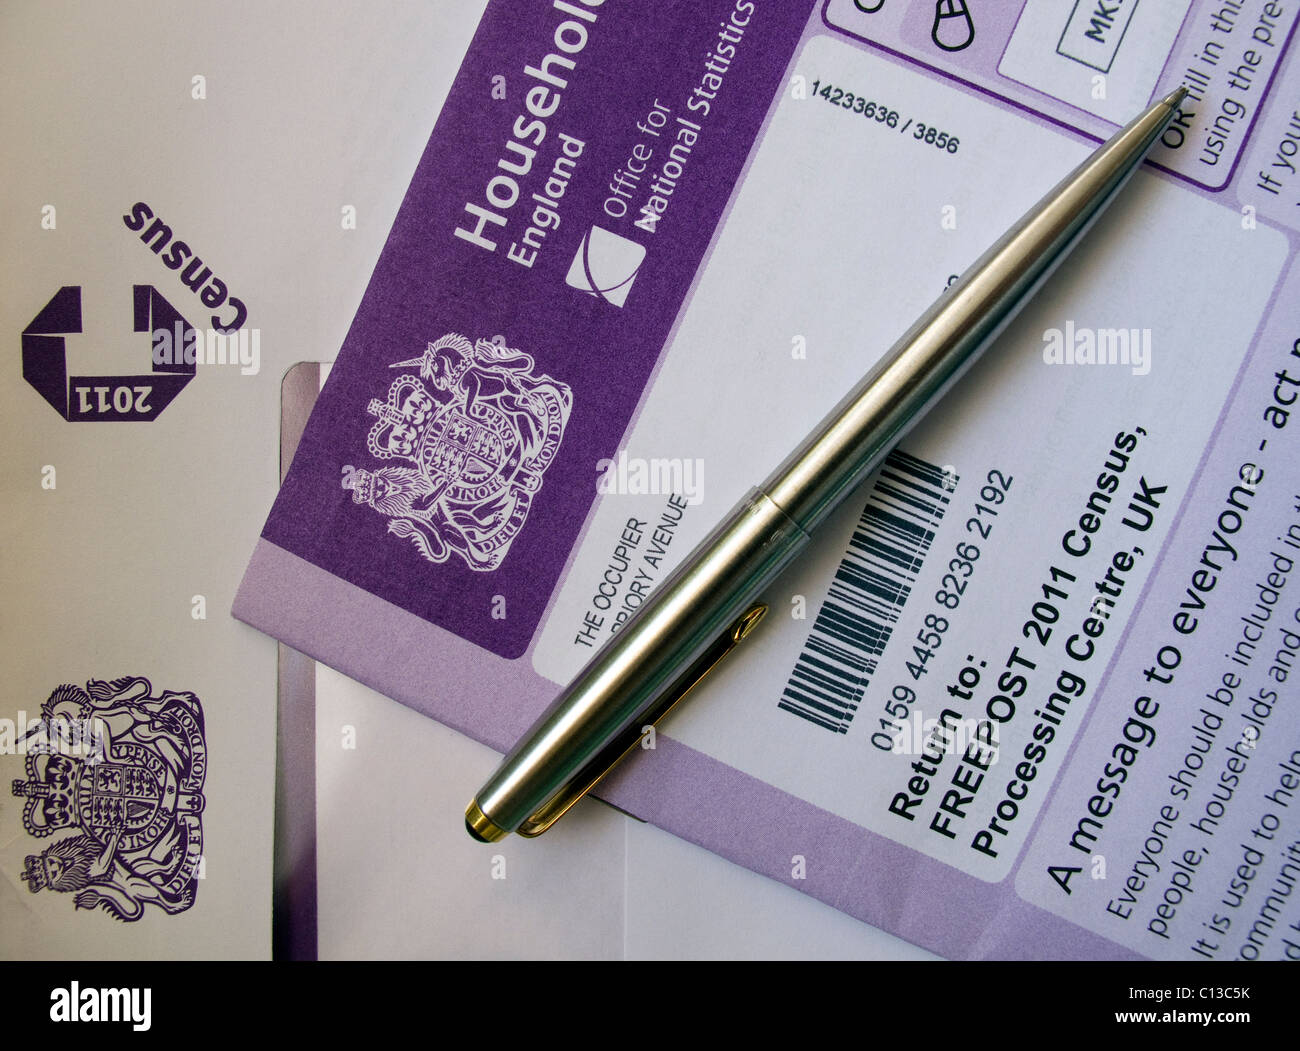 El Censo Nacional de 2011 formas llegan hoy a nivel doméstico accrosss el Reino Unido por correo Foto de stock